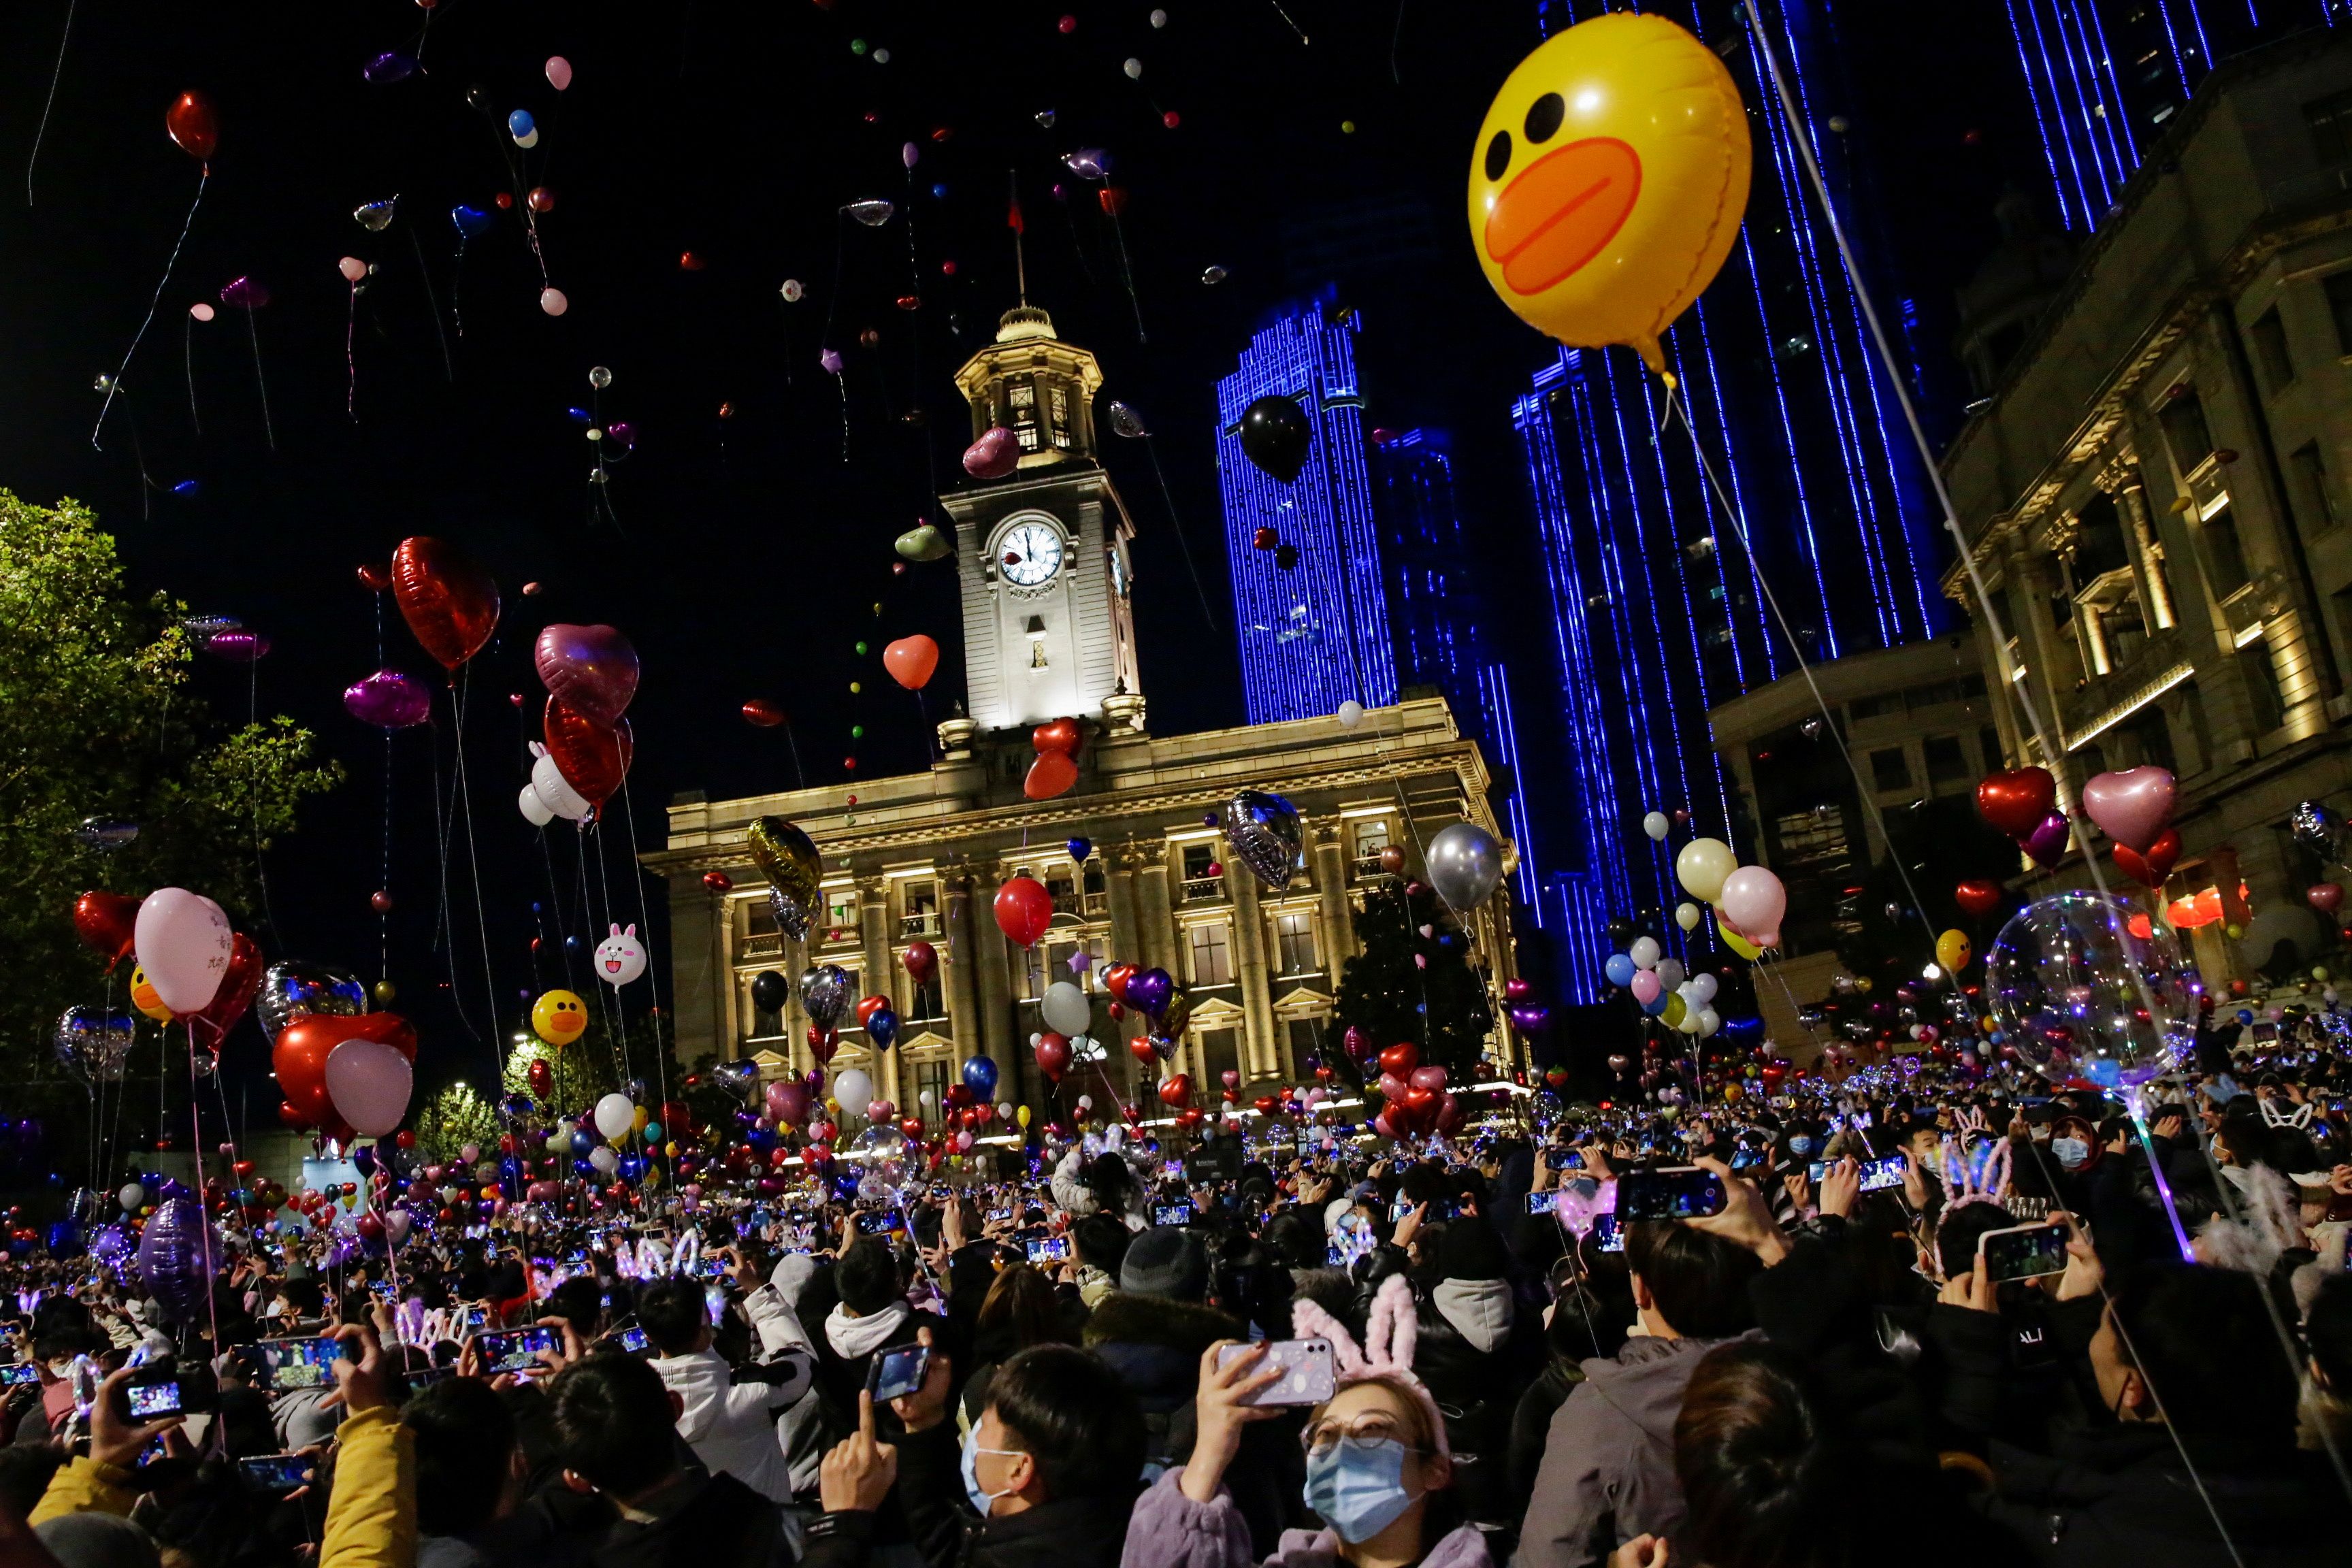 أطلق العديد من الناس بالونات في الهواء وهتفوا "سنة جديدة سعيدة"